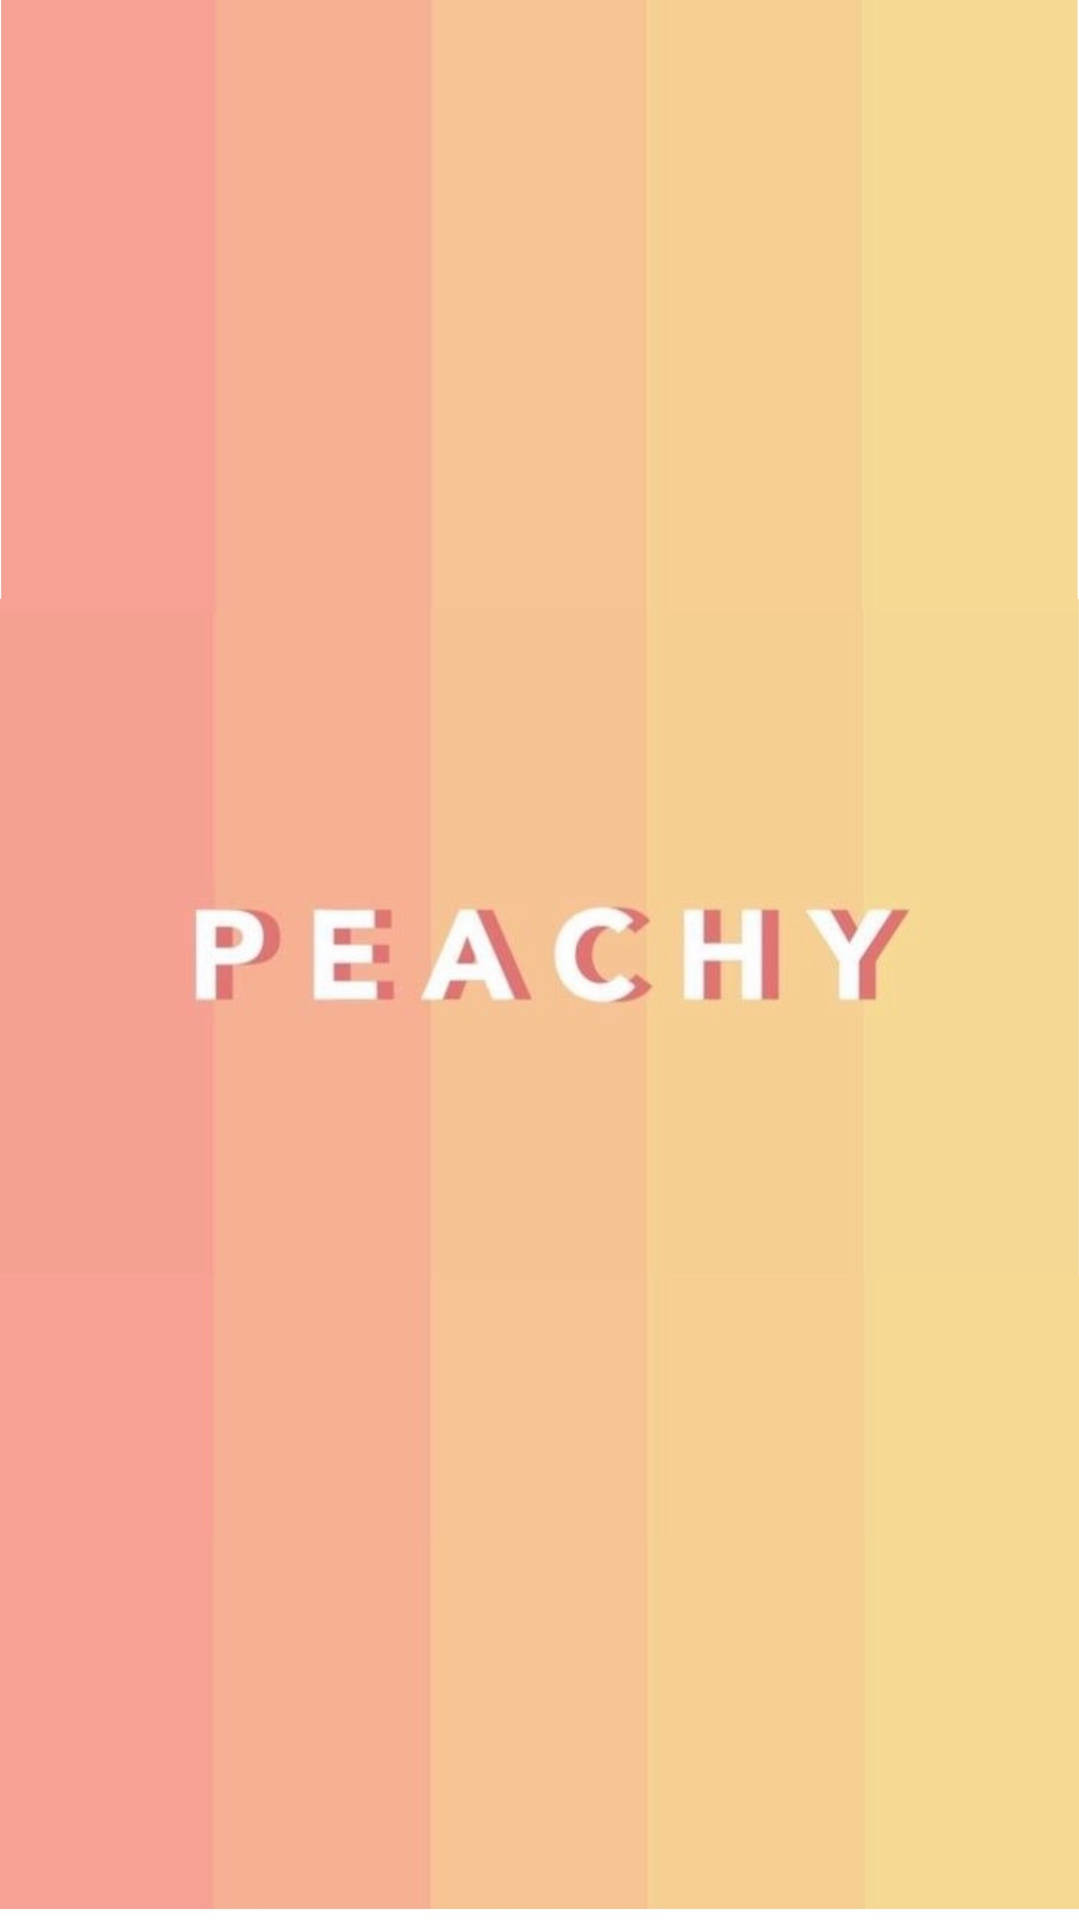 Peachy Text On Pastel Peach Shades